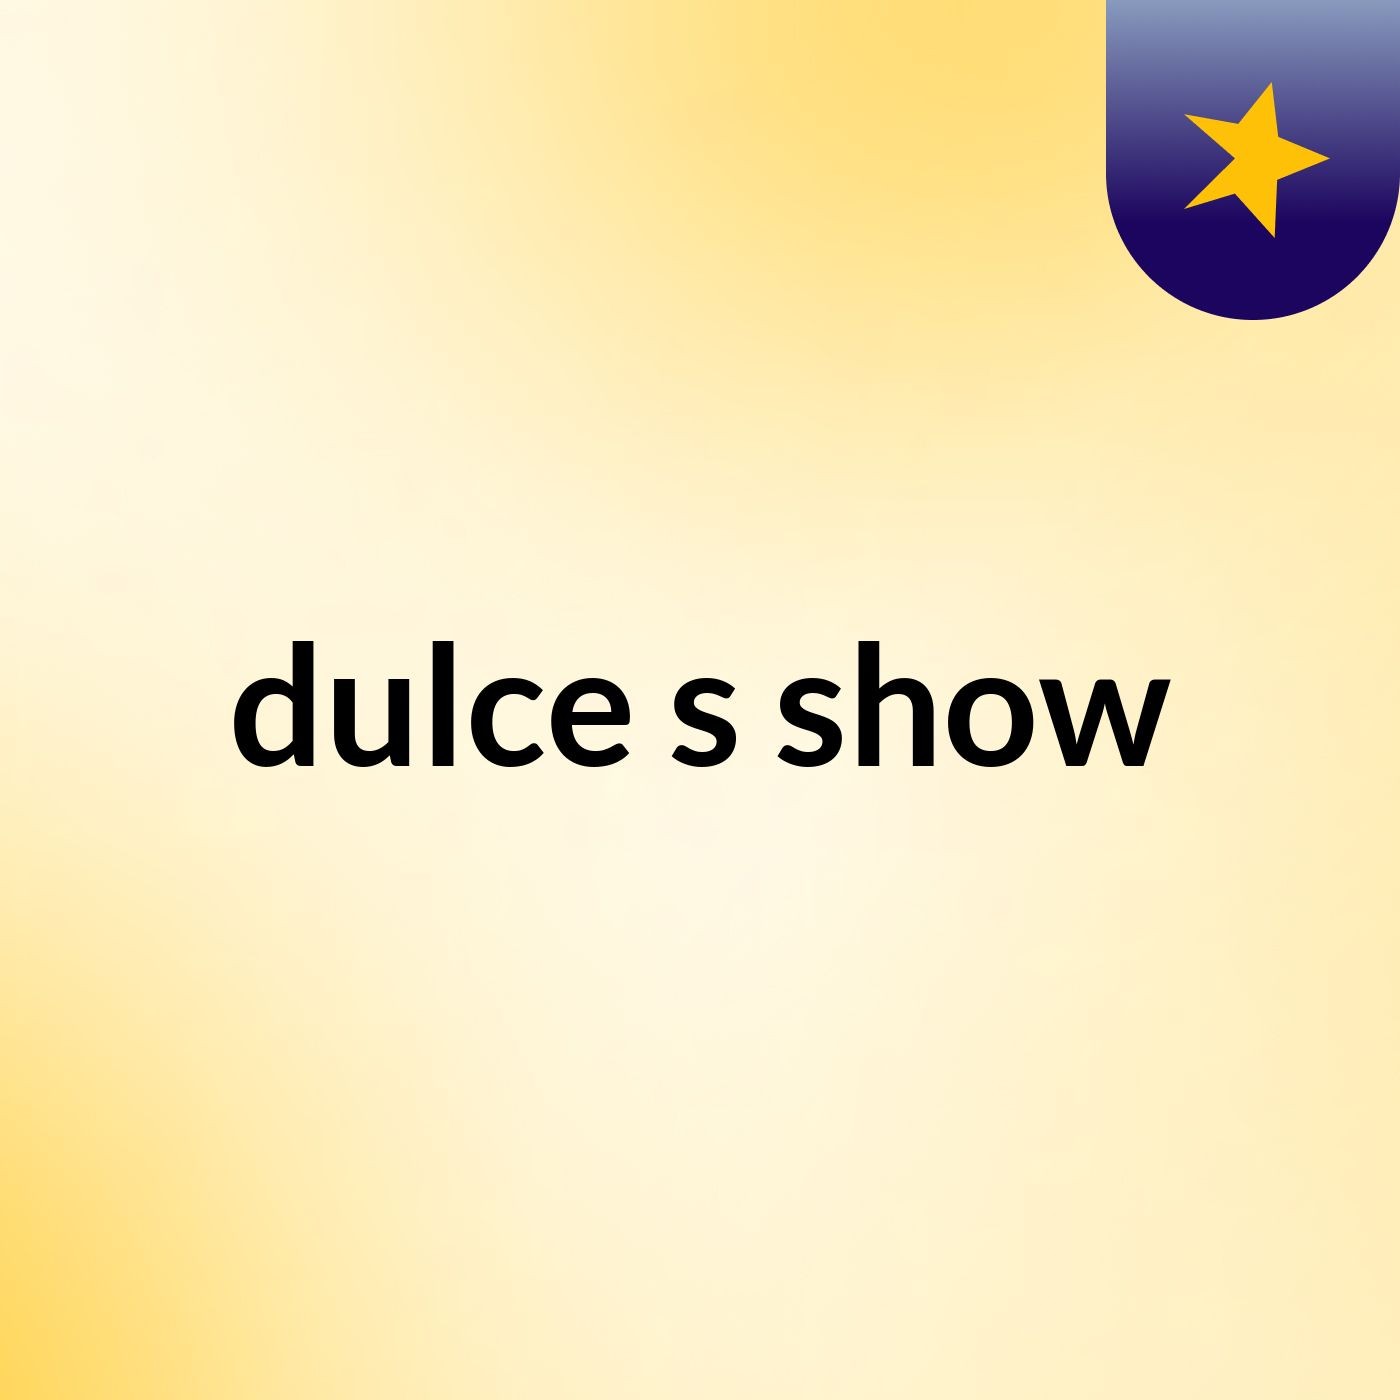 dulce's show